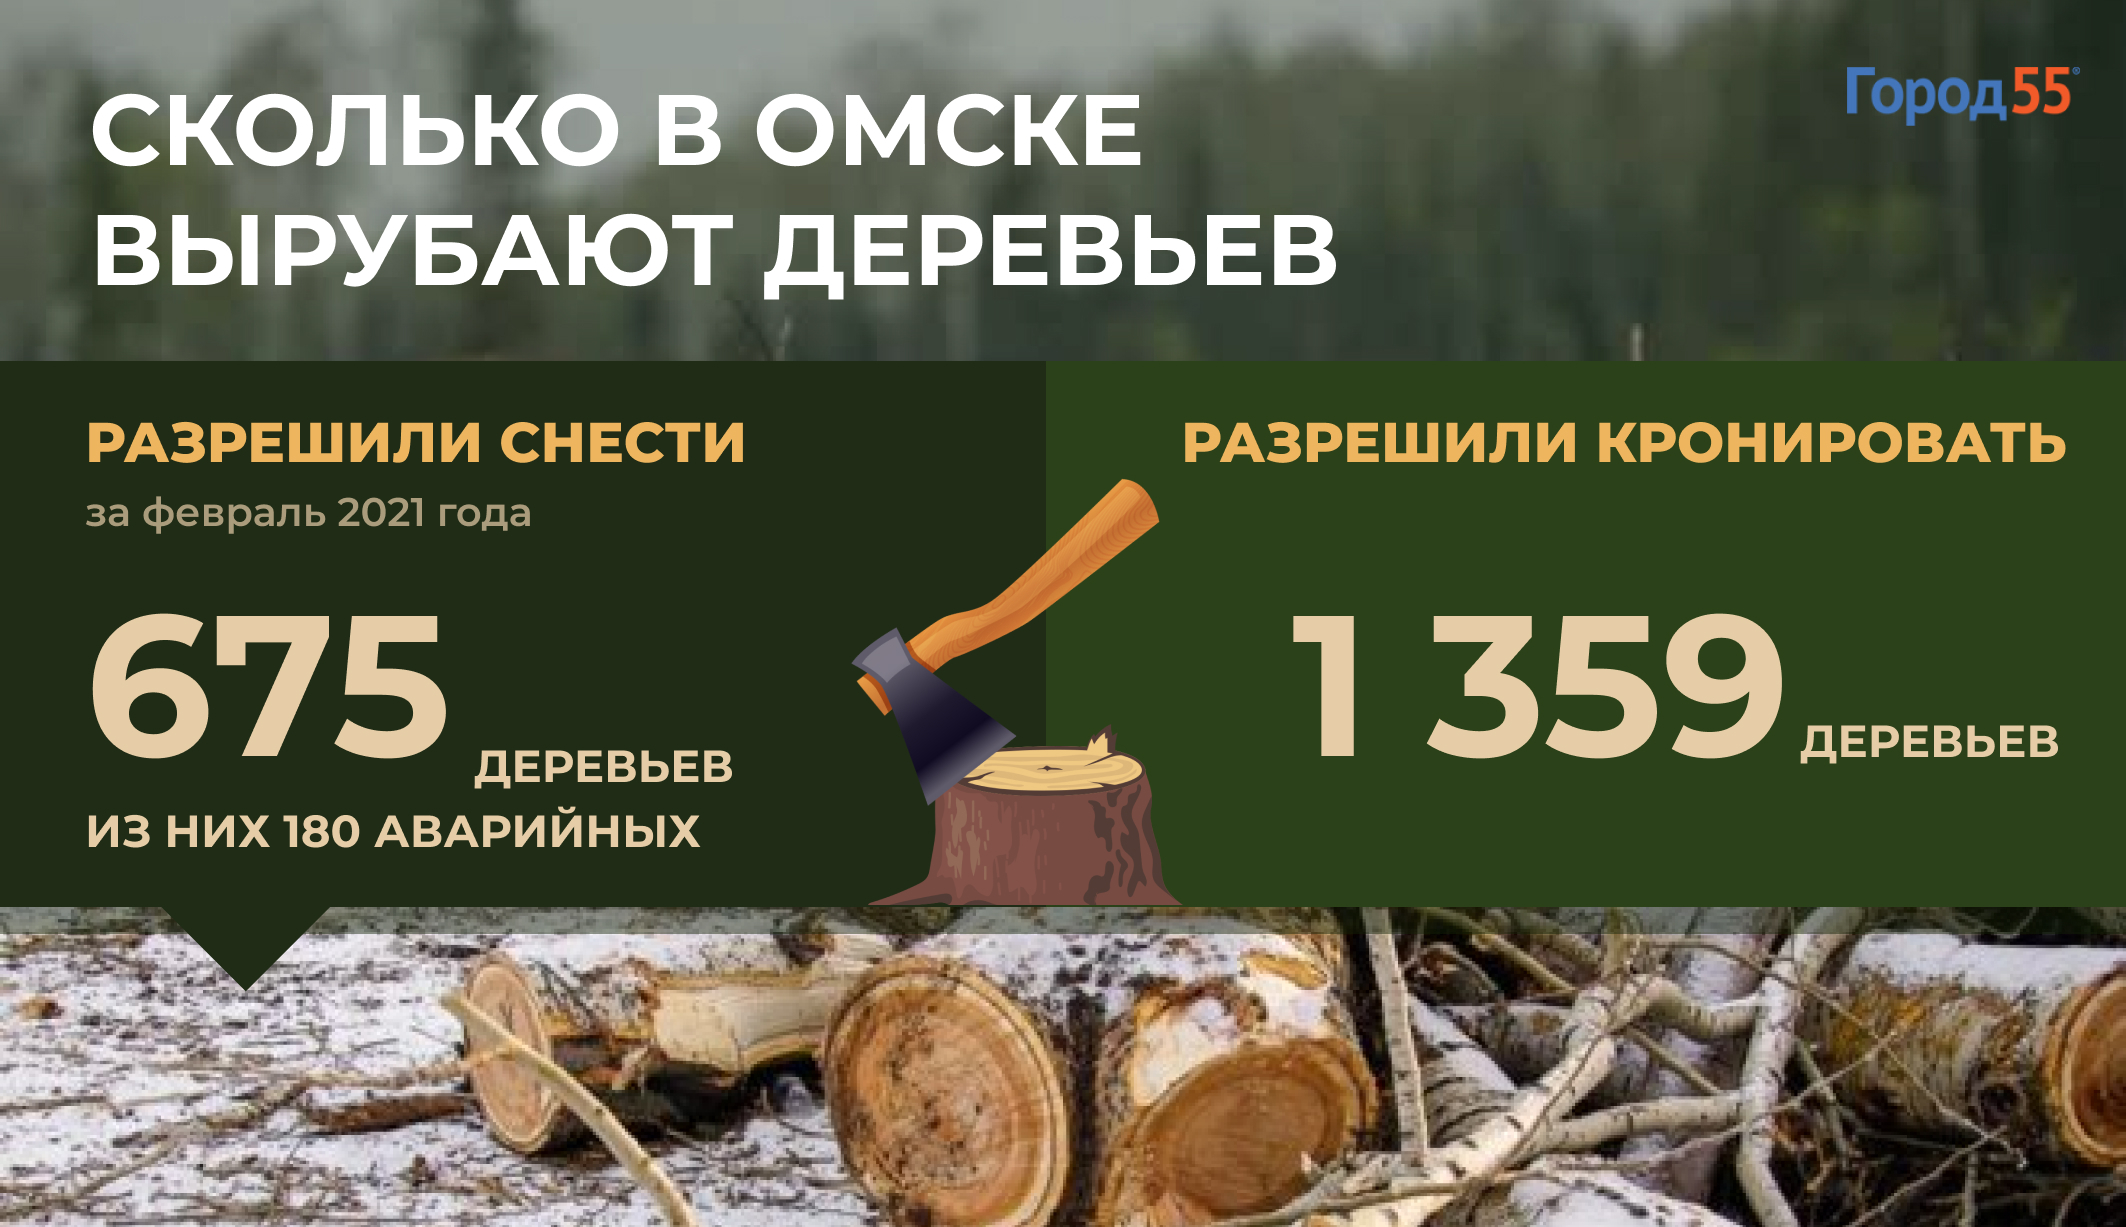 Омск лишится еще 675 деревьев. Где пройдут вырубки